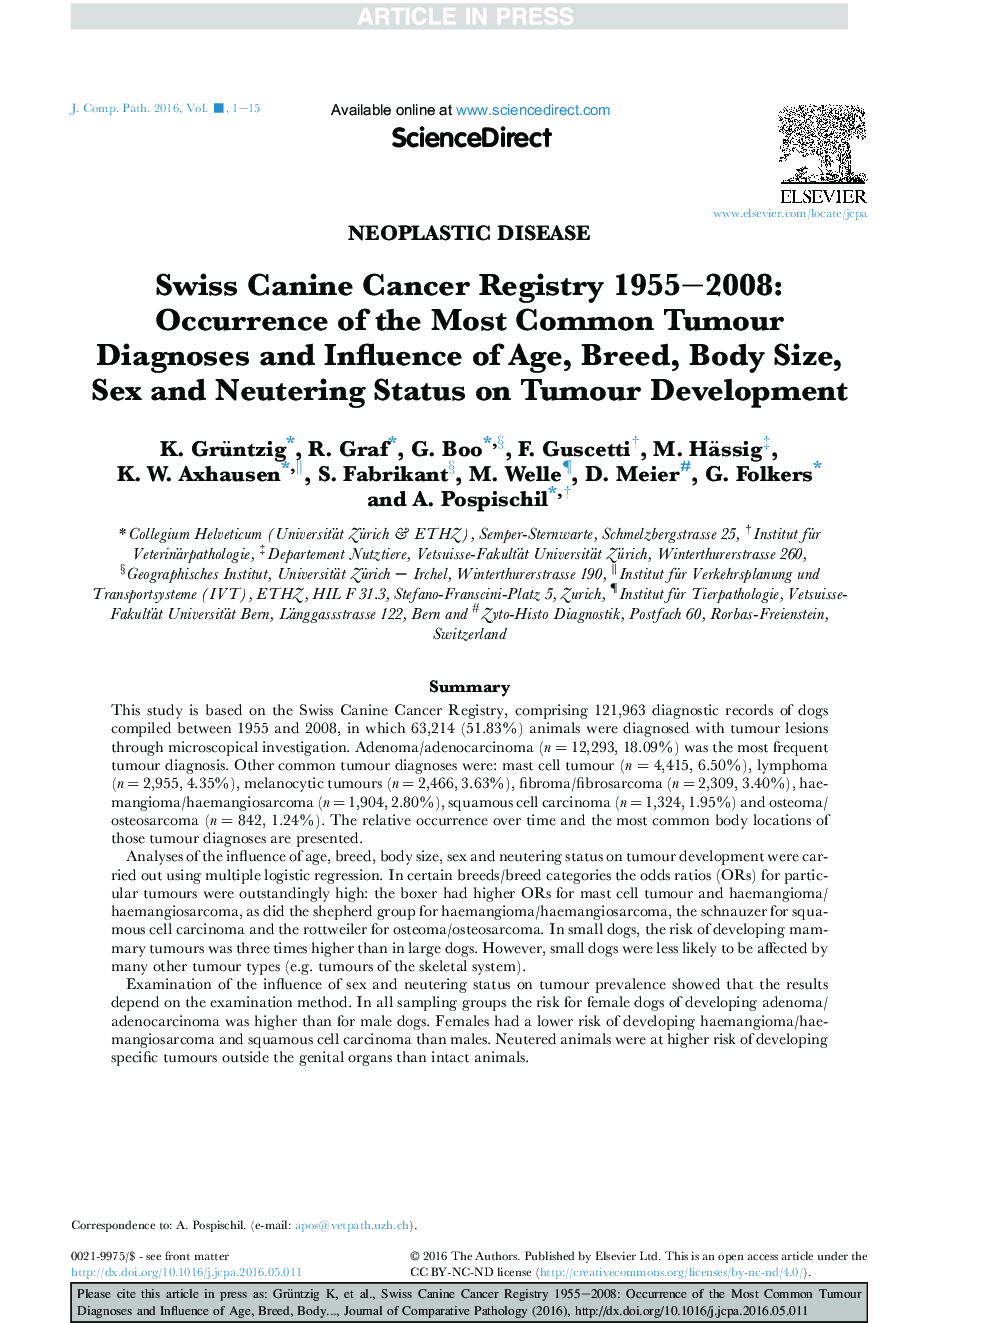 سرطان سویس سوئیس 1955-2008: پدیدار تشخیص های رایج ترین تومور و تاثیر سن، نژاد، اندازه بدن، وضعیت جنسی و وضعیت خنثی در رشد تومور 